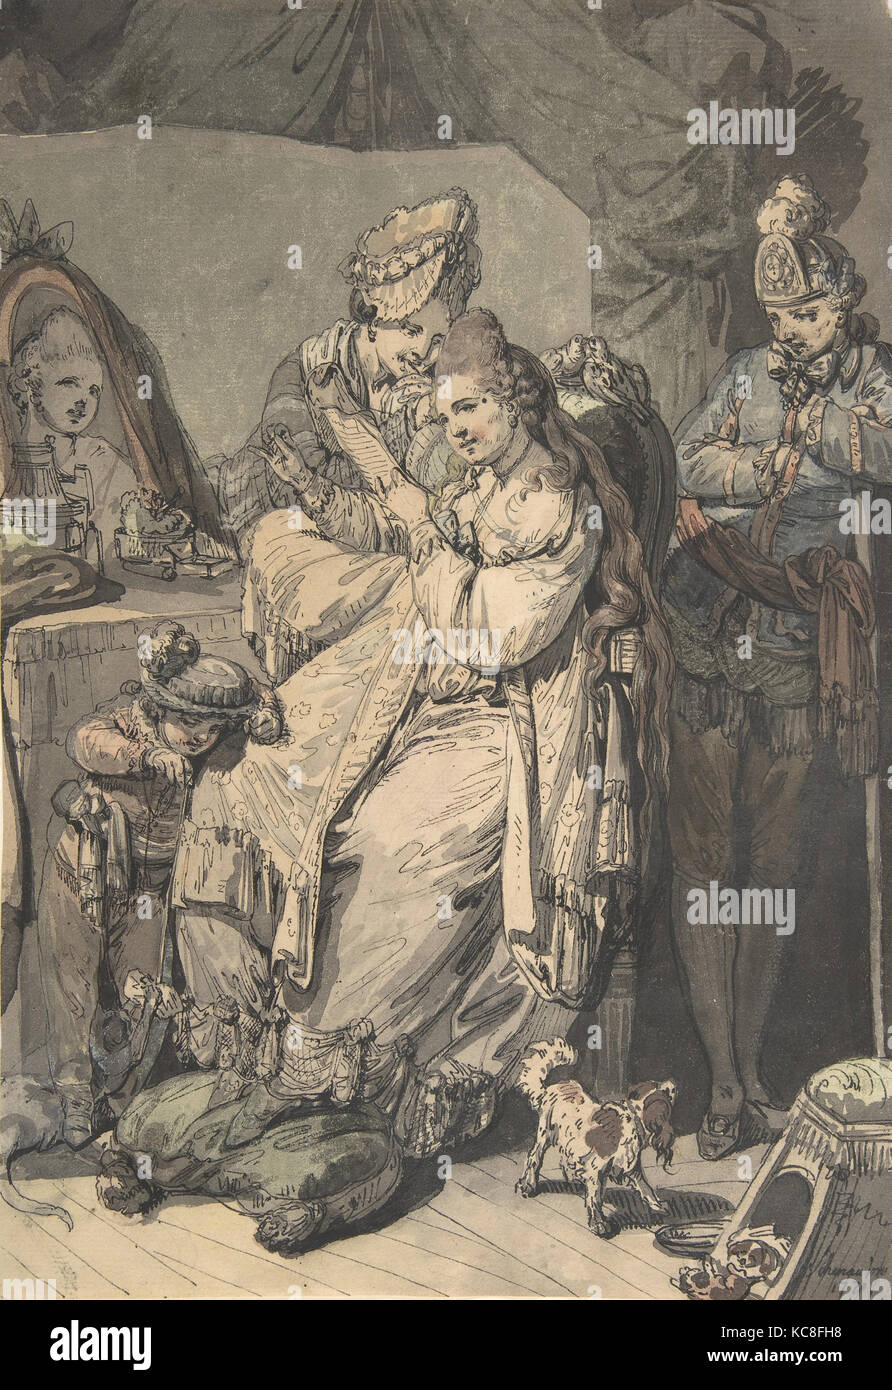 Eine Frau an ihr Wc mit einer Magd, ein Junge, ein Hund und ein junger Soldat; Verso: eine Skizze für eine ähnliche Zusammensetzung Stockfoto